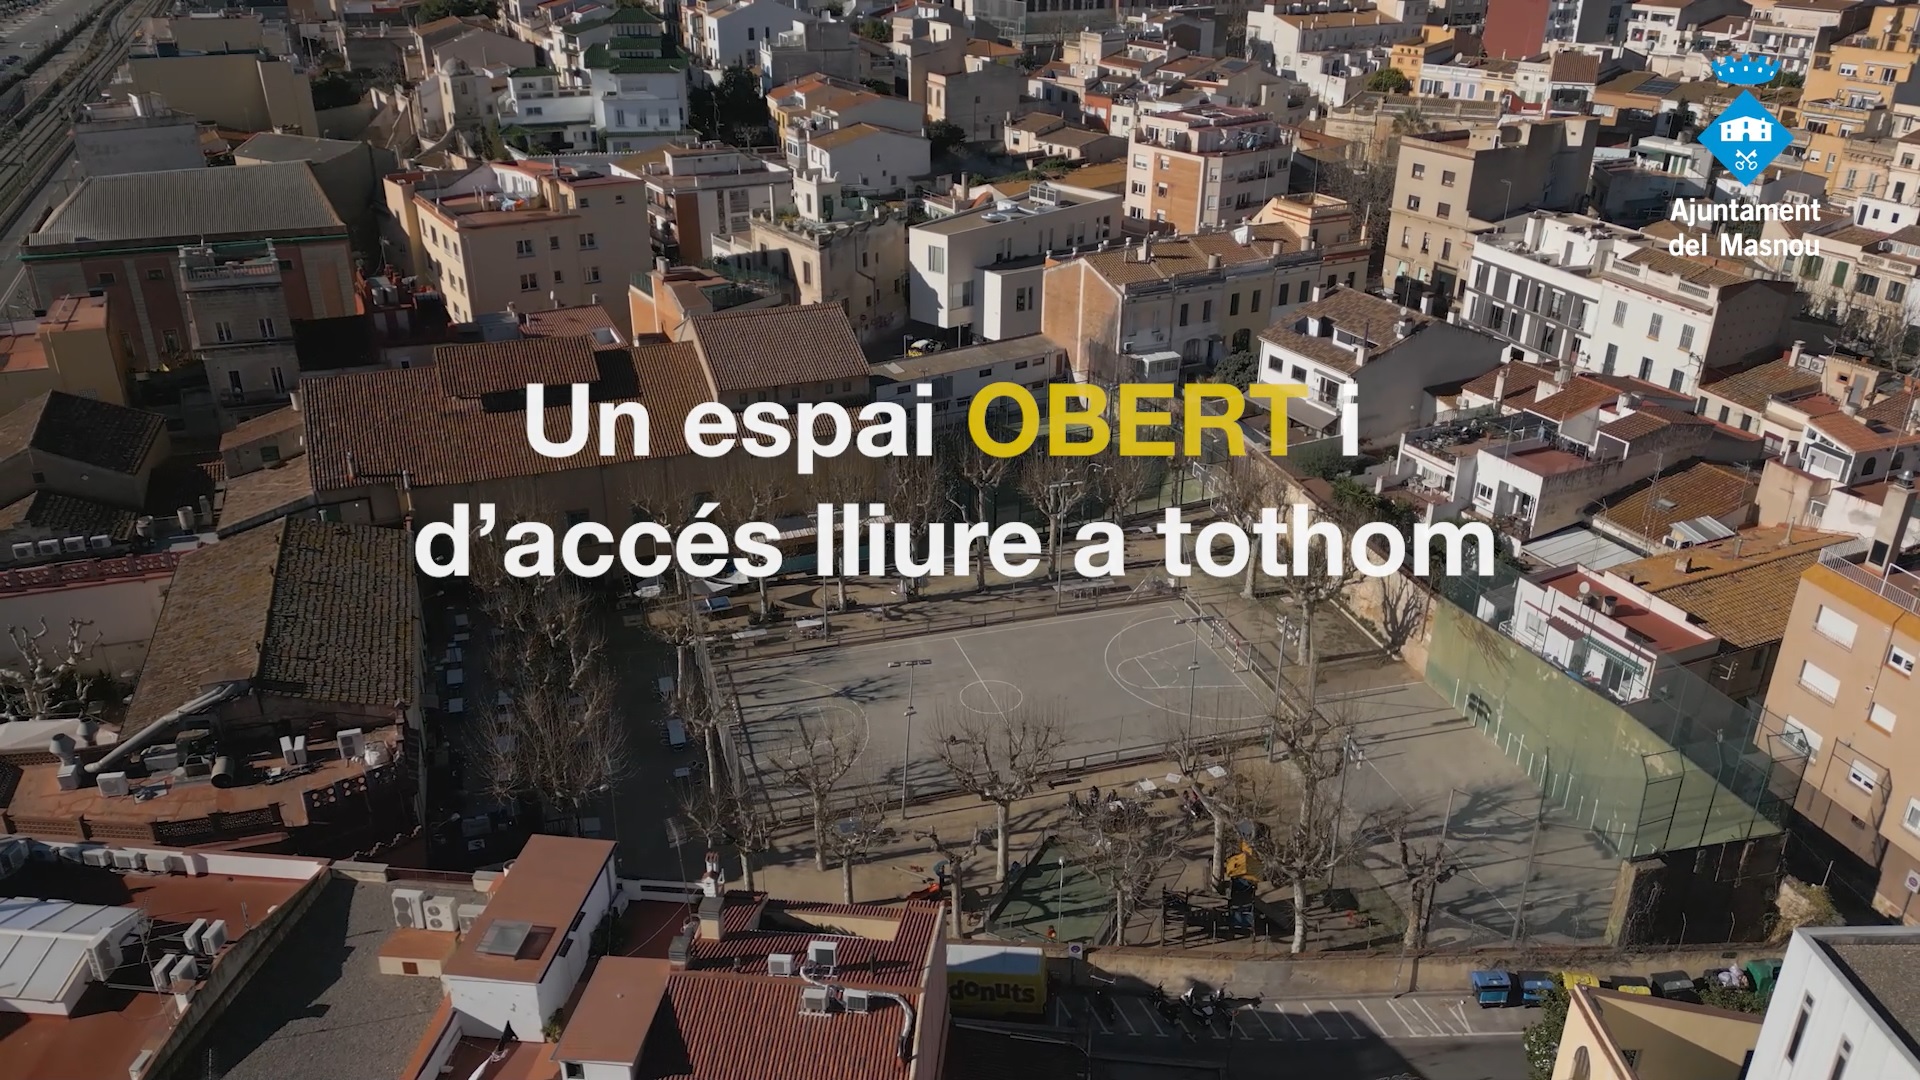 Fragment que forma part del vídeo que resumeix la transformació urbanística del Masnou.